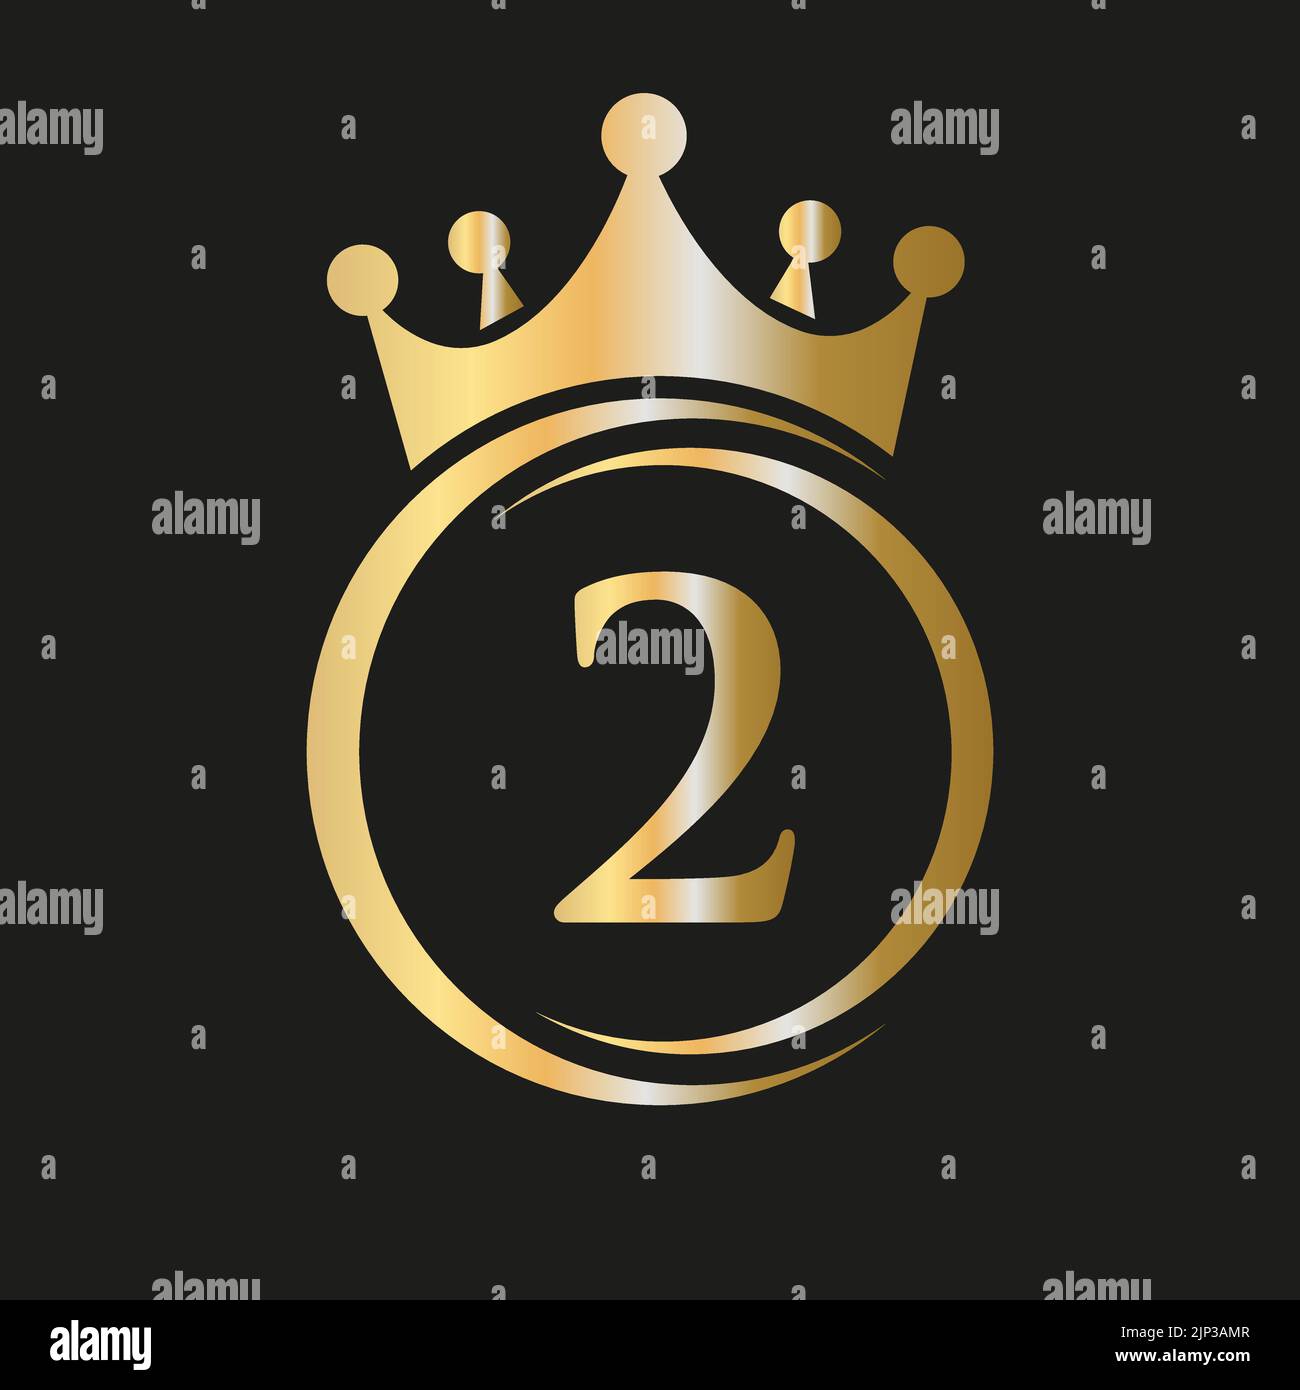 Letter 2 Crown Logo. Royal Crown Logo for Spa, Yoga, Beauty, Fashion ...